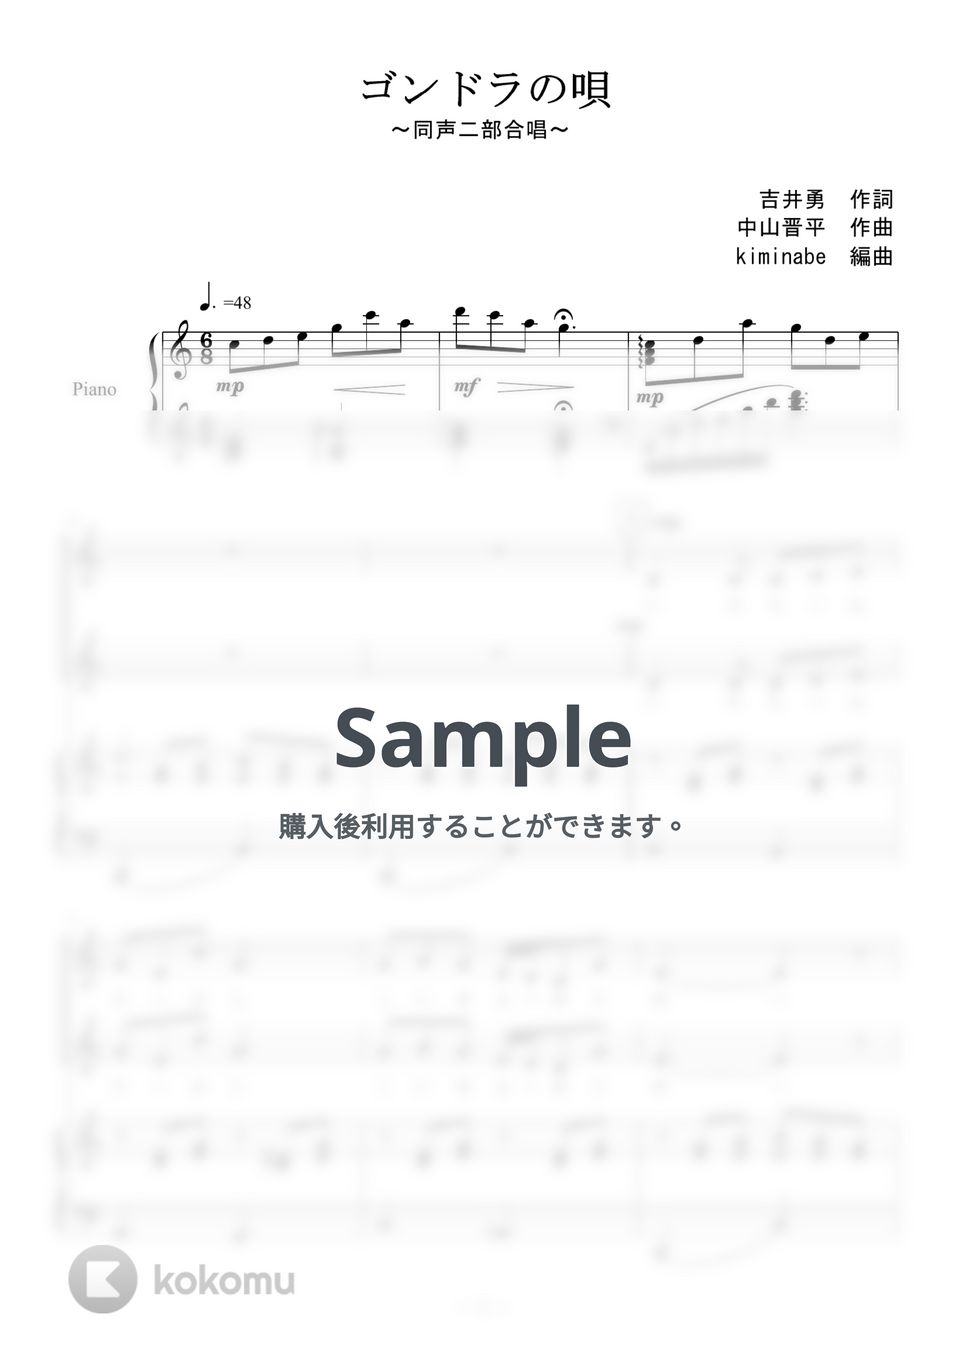 中山晋平 - ゴンドラの唄 (同声二部合唱) by kiminabe